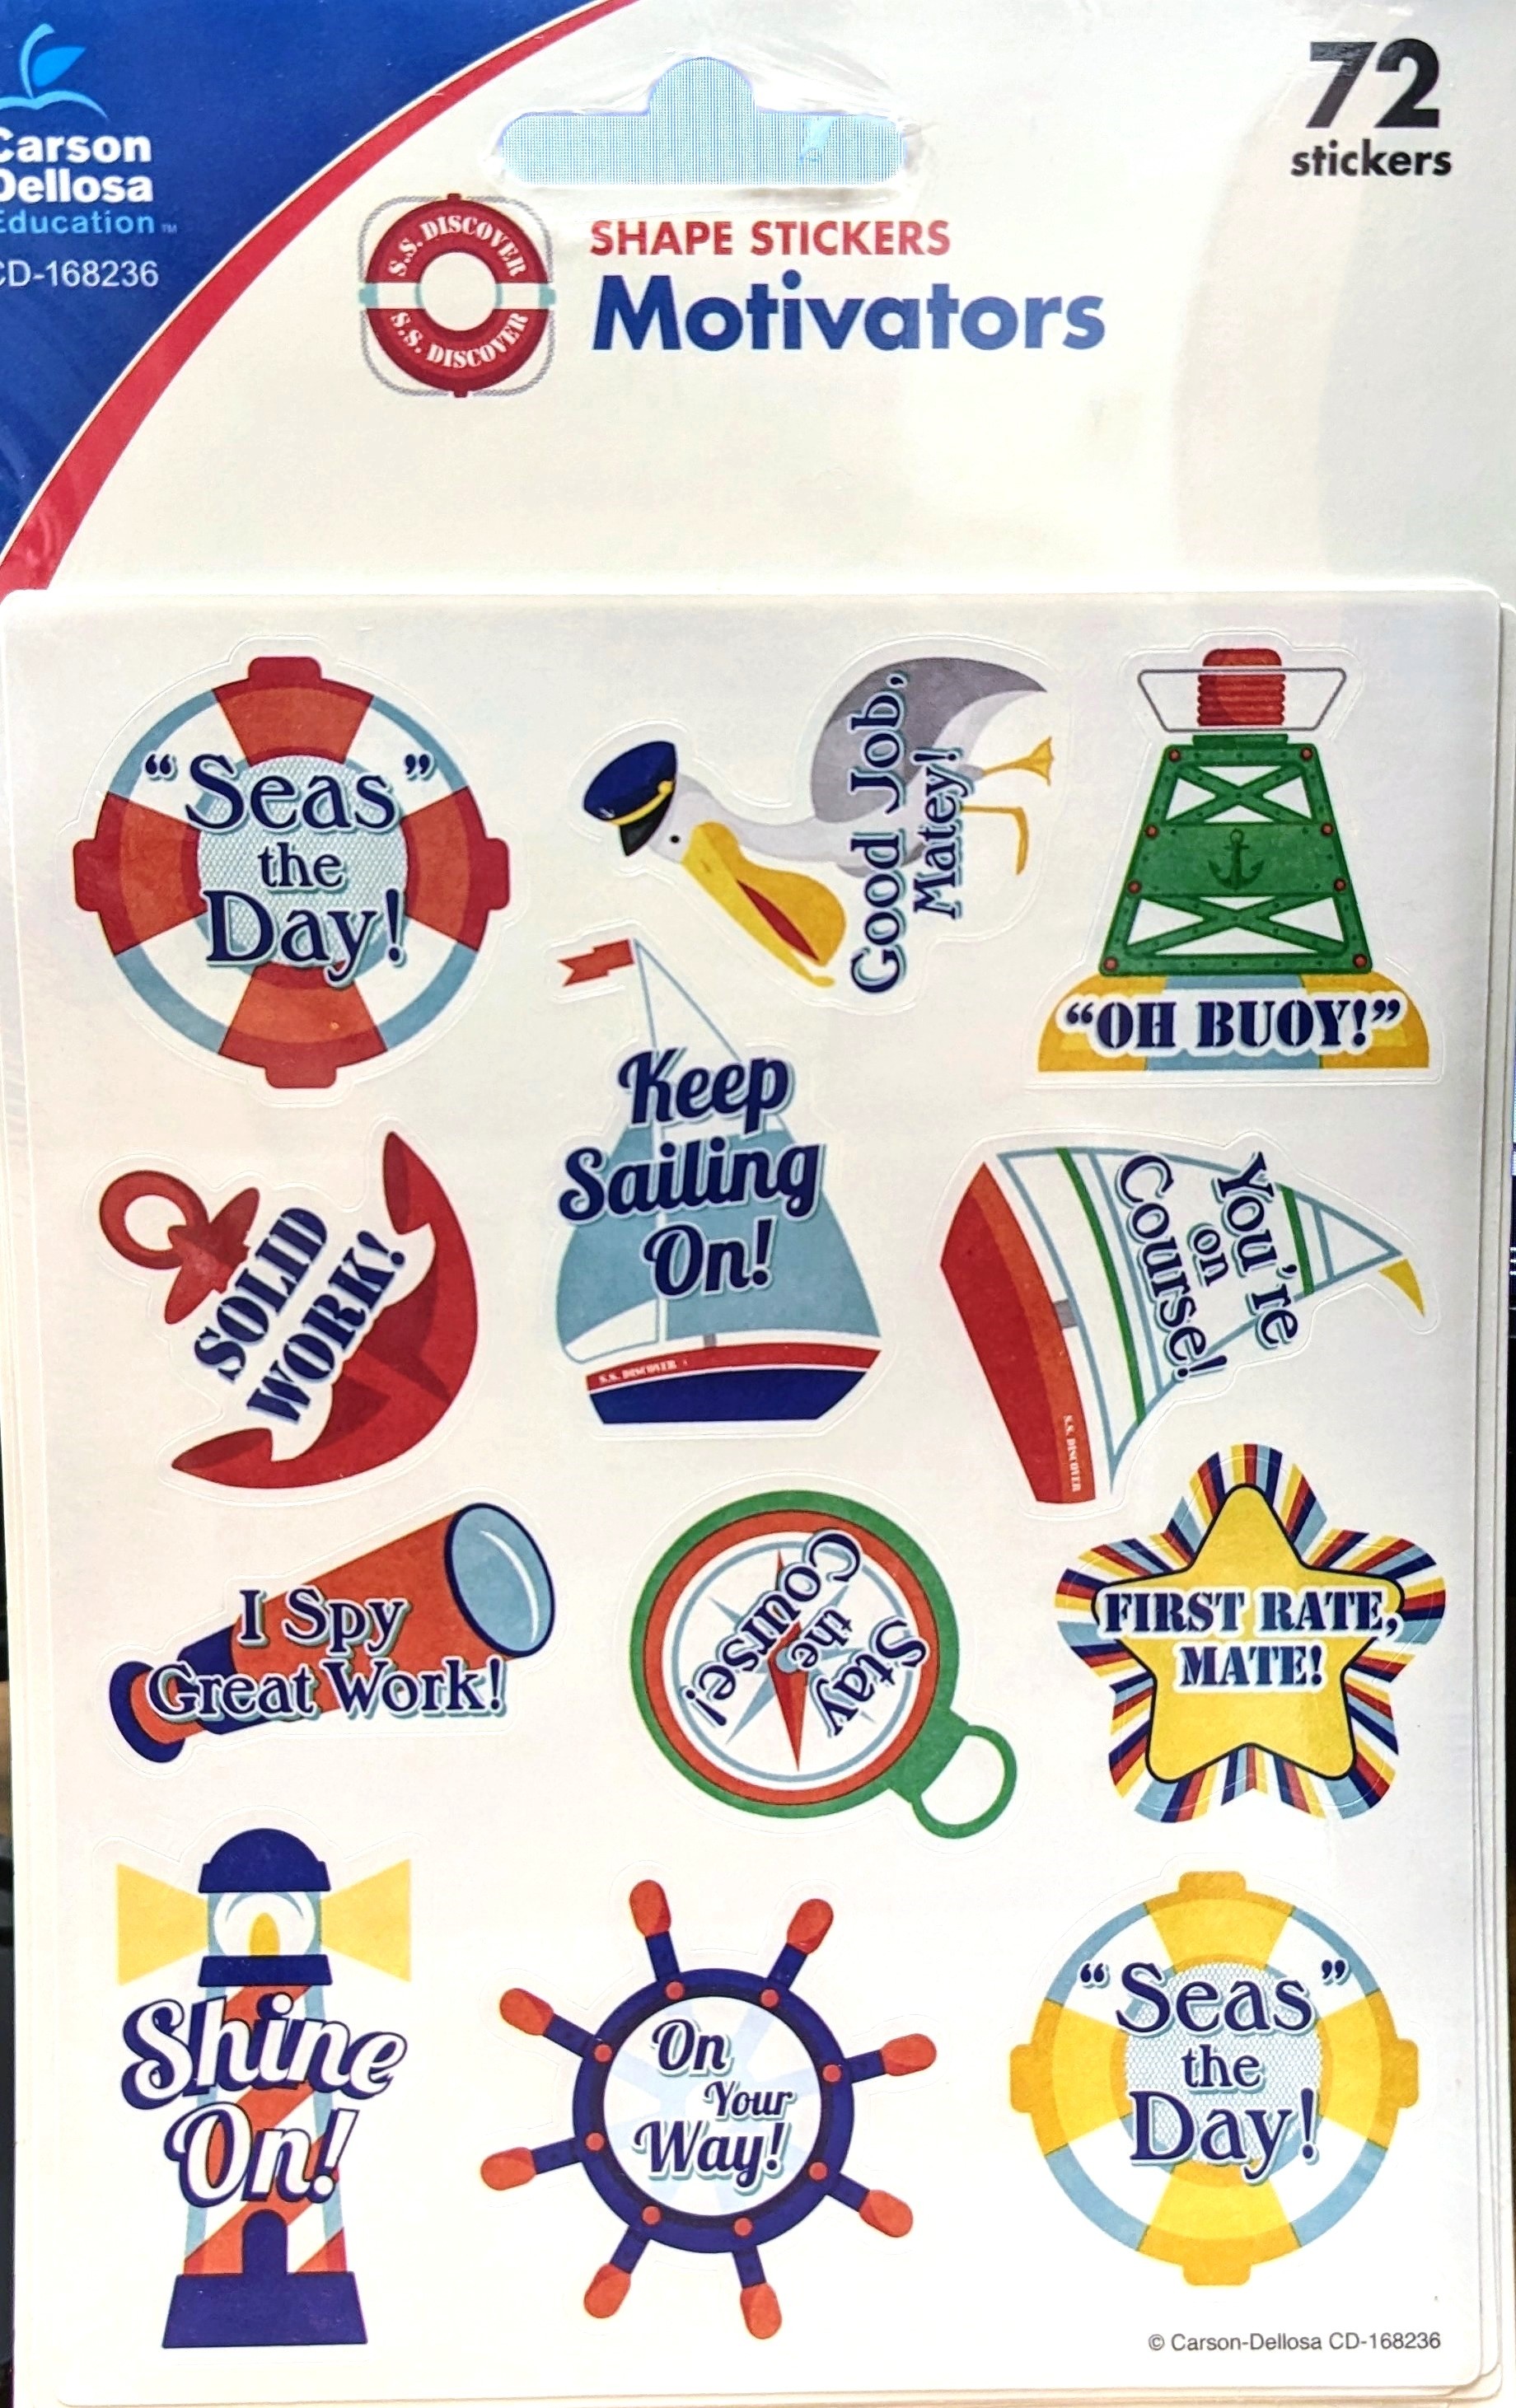 Carson Dellosa Shape Stickers Motivators, "Seas" the Day!